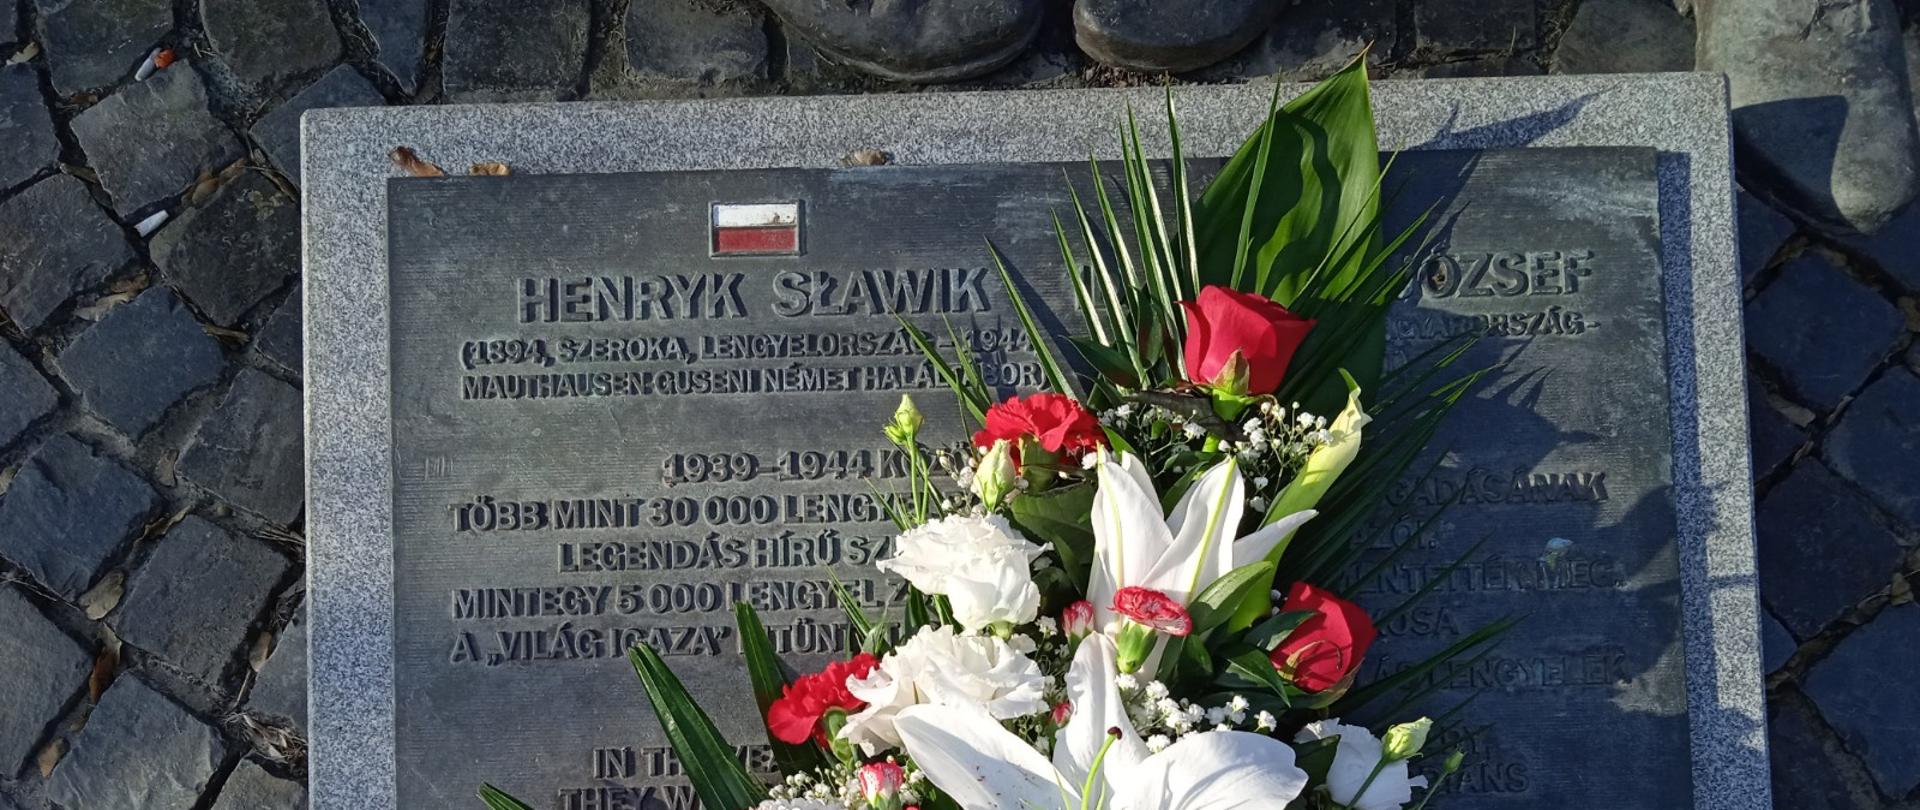 Jerzy Snopek , nagykövet és Katarzyna Ratajczak-Sowa a Politikai-Közgazdasági Osztály vezetője virágot helyeznek el Henryk Slawik és Antall József emlékműnél